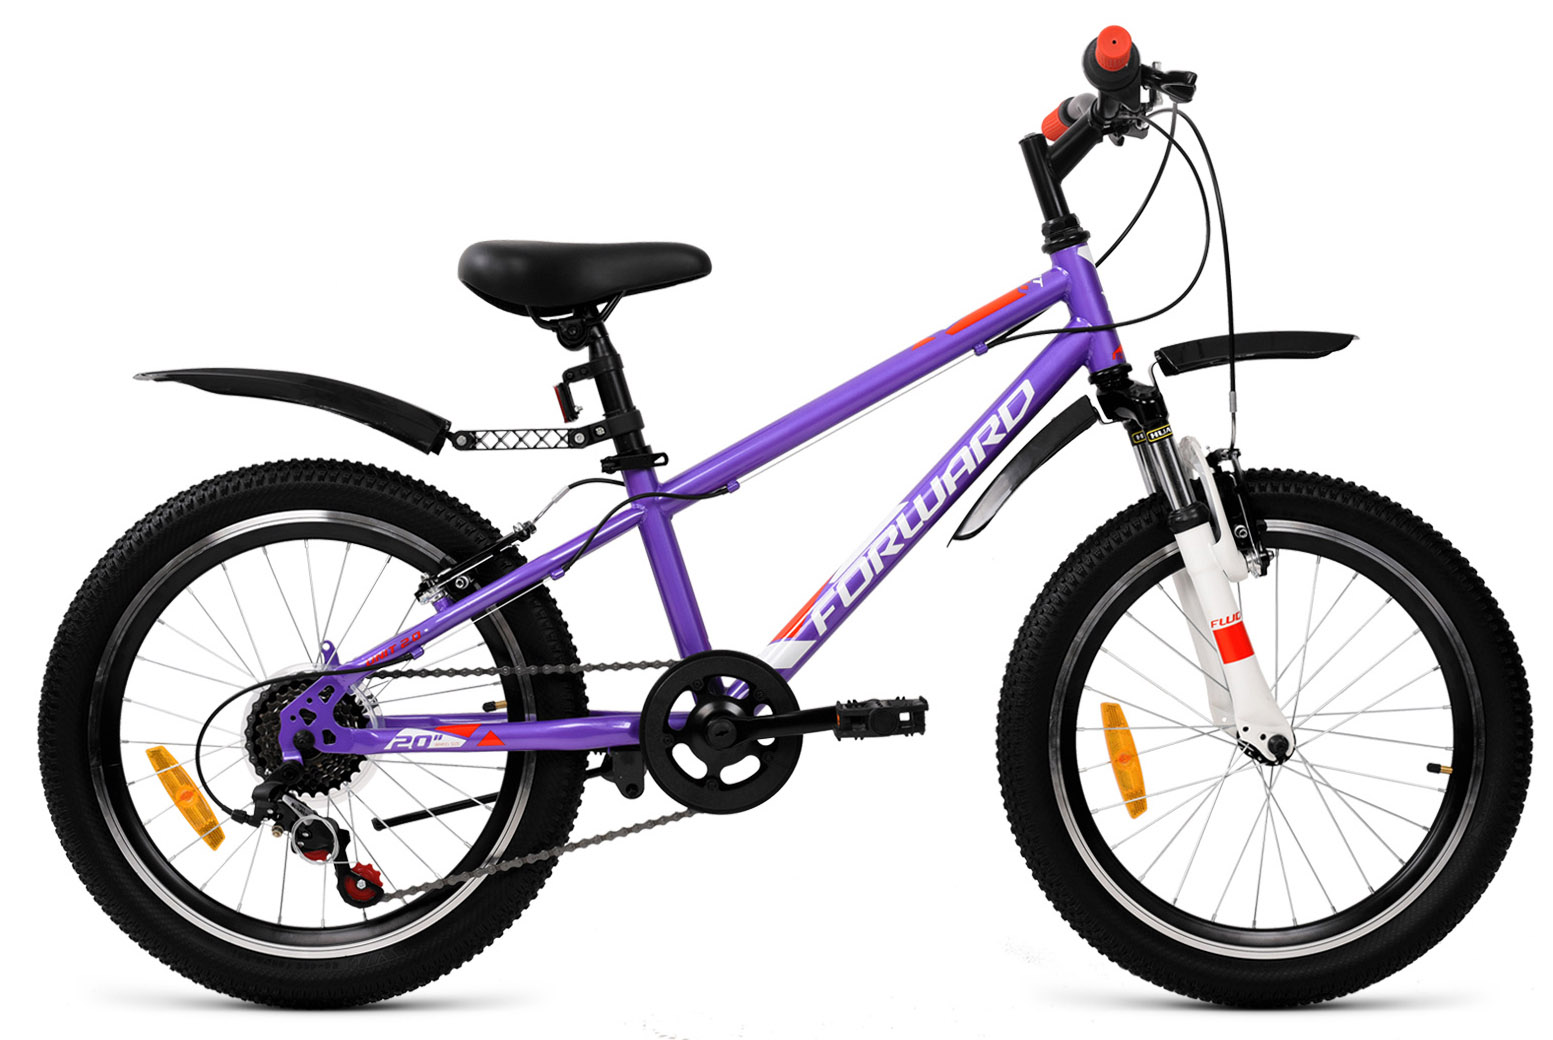  Отзывы о Детском велосипеде Forward Unit 20 2.2 2021